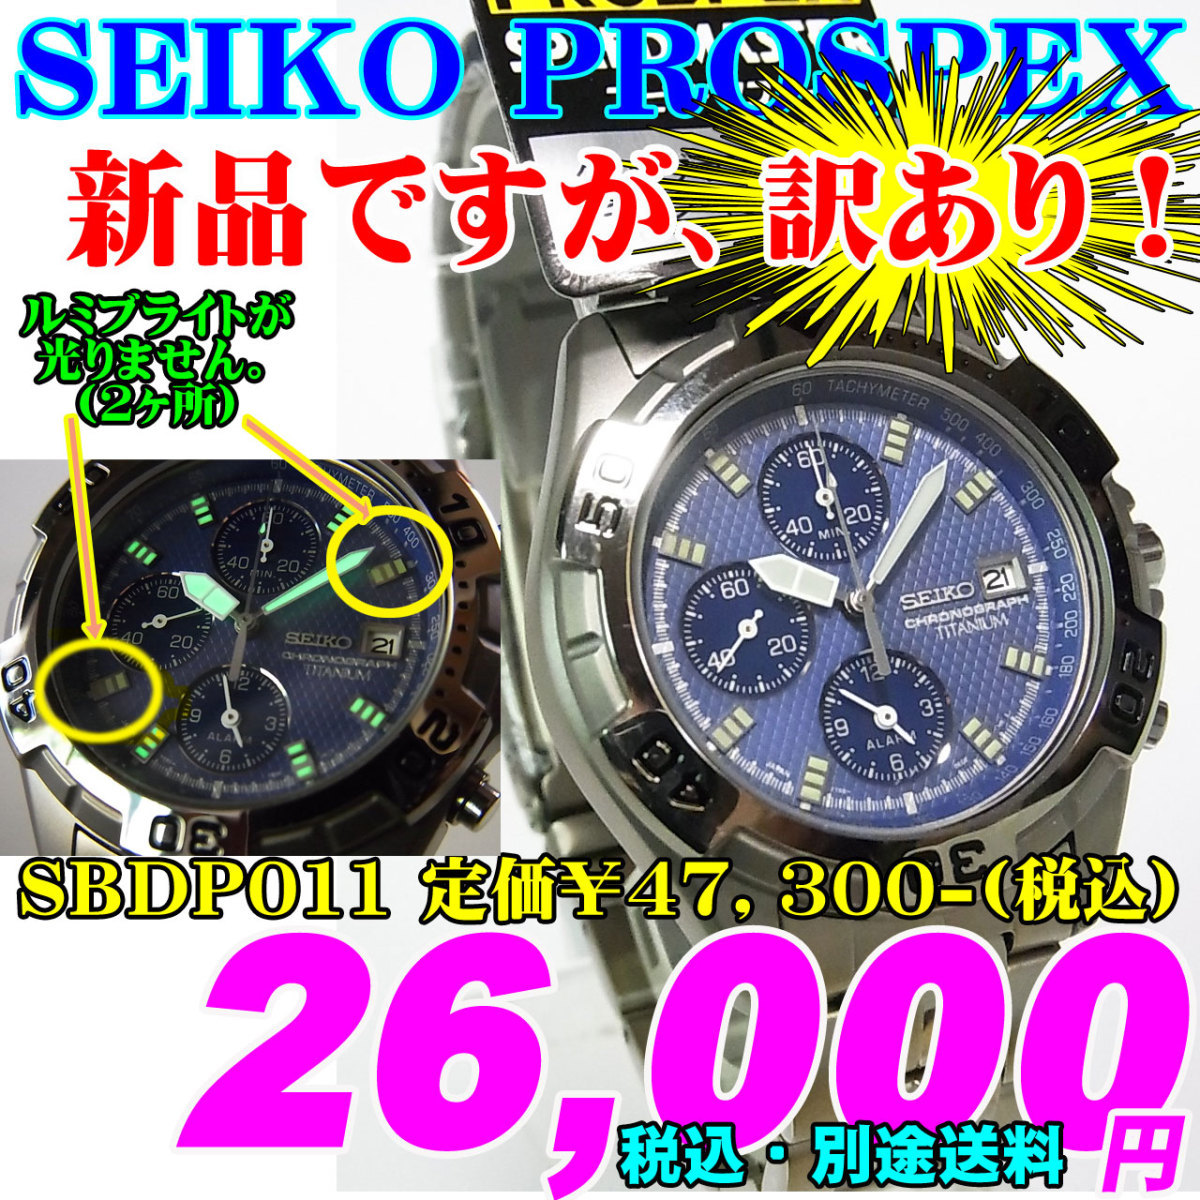 新品ですが・・・訳あり SEIKO PROSPEX セイコー プロスペックス SBDP011 定価￥47 300-(税込)新品です チタン クォーツ お買い得